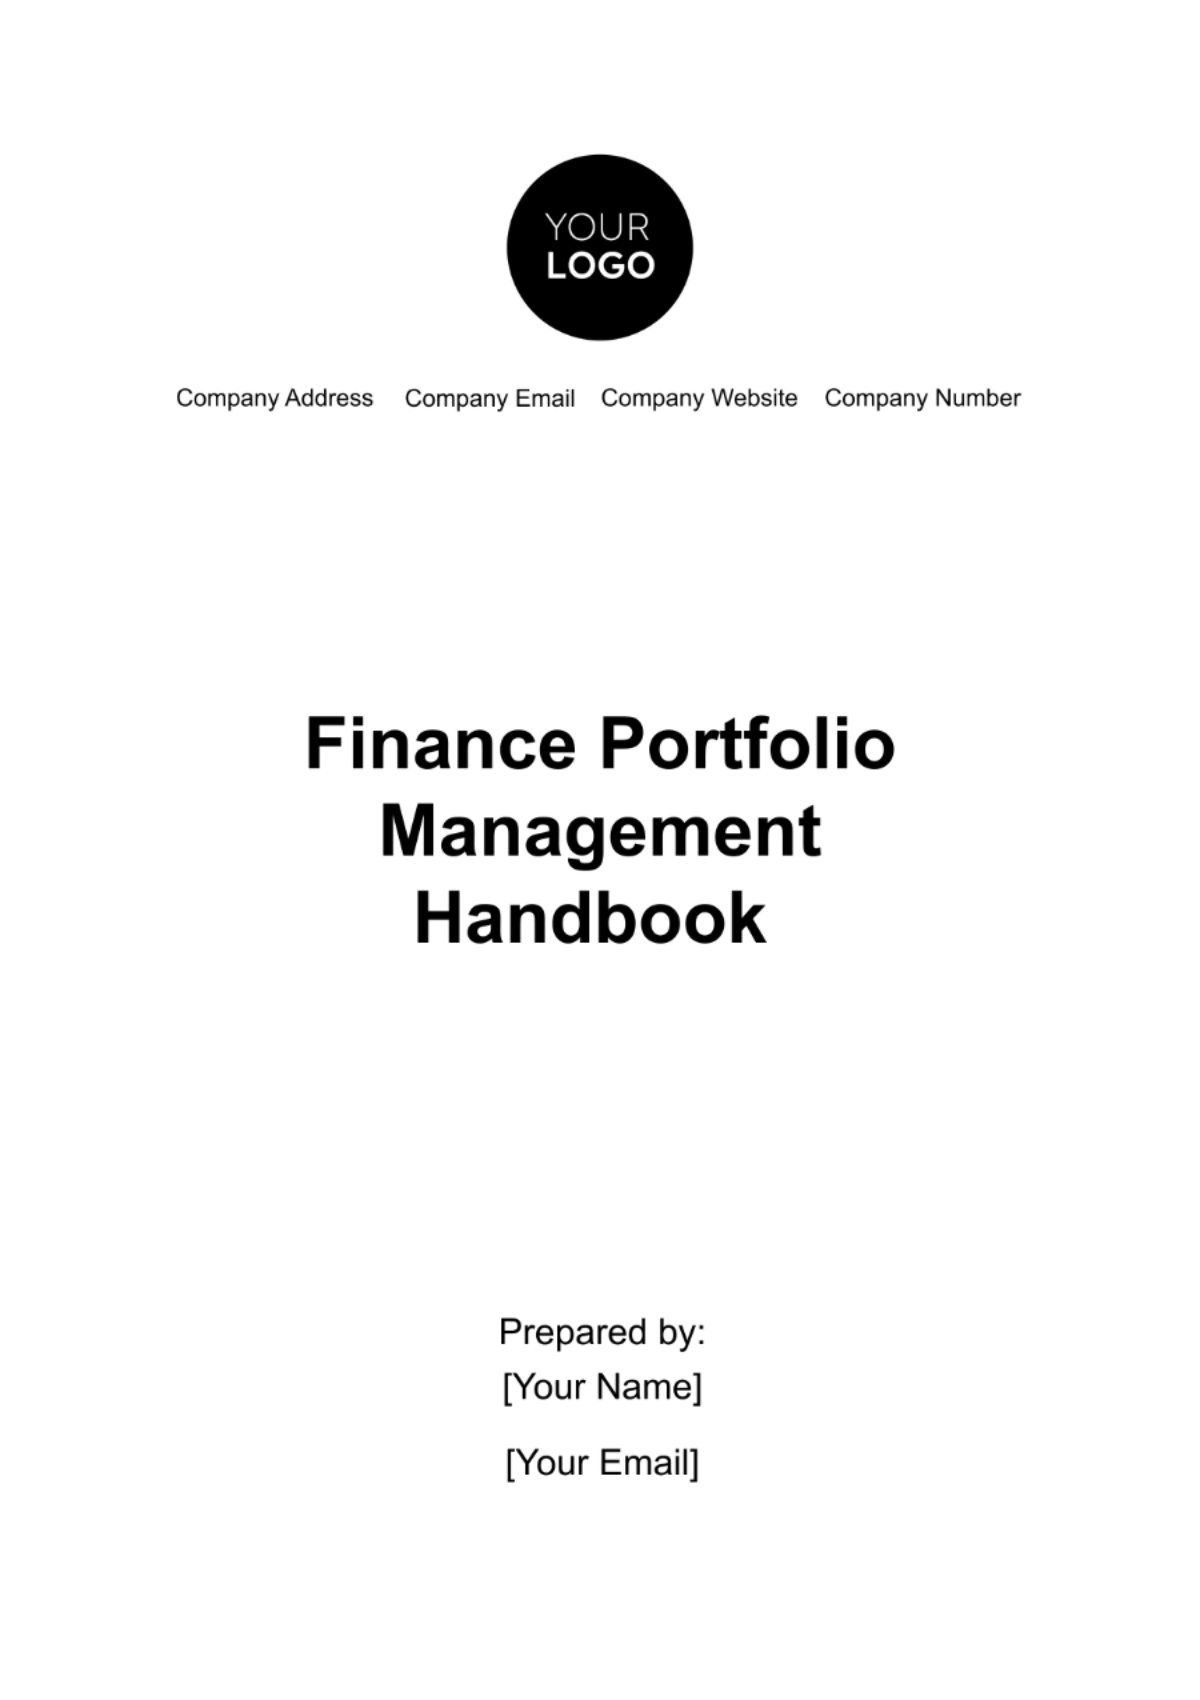 Finance Portfolio Management Handbook Template